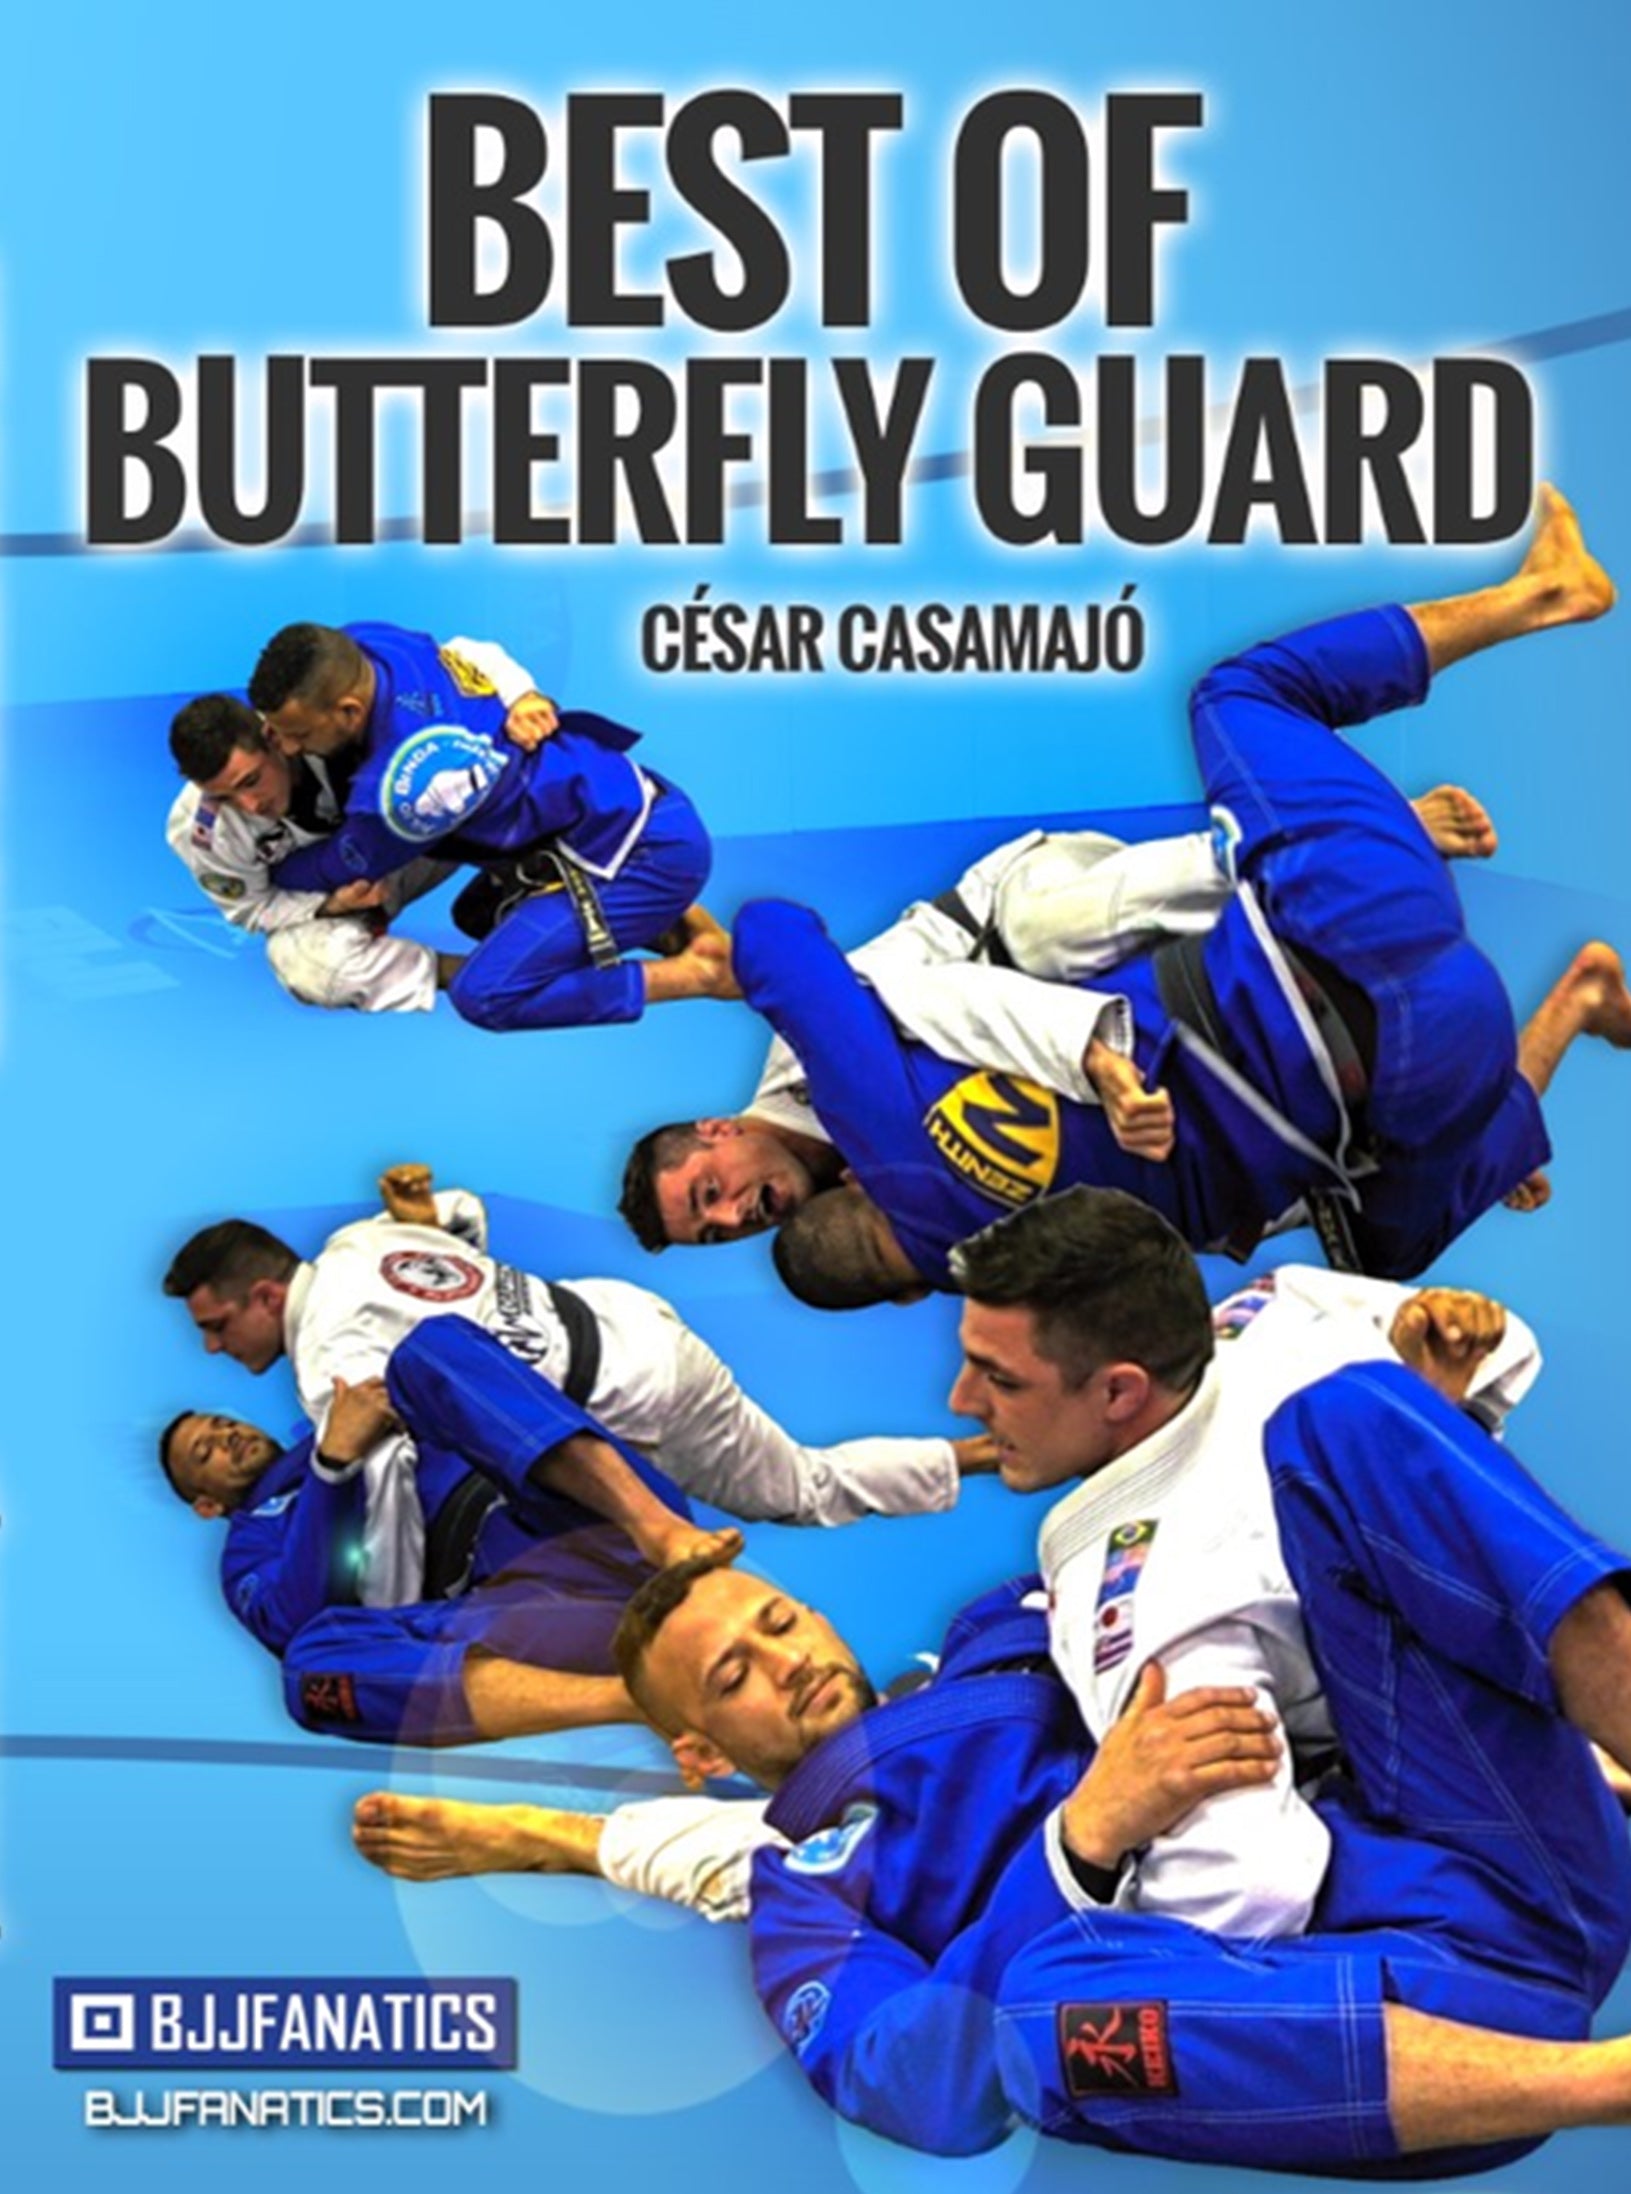 Best of Butterfly Guard by Cesar Casamajo - Digital